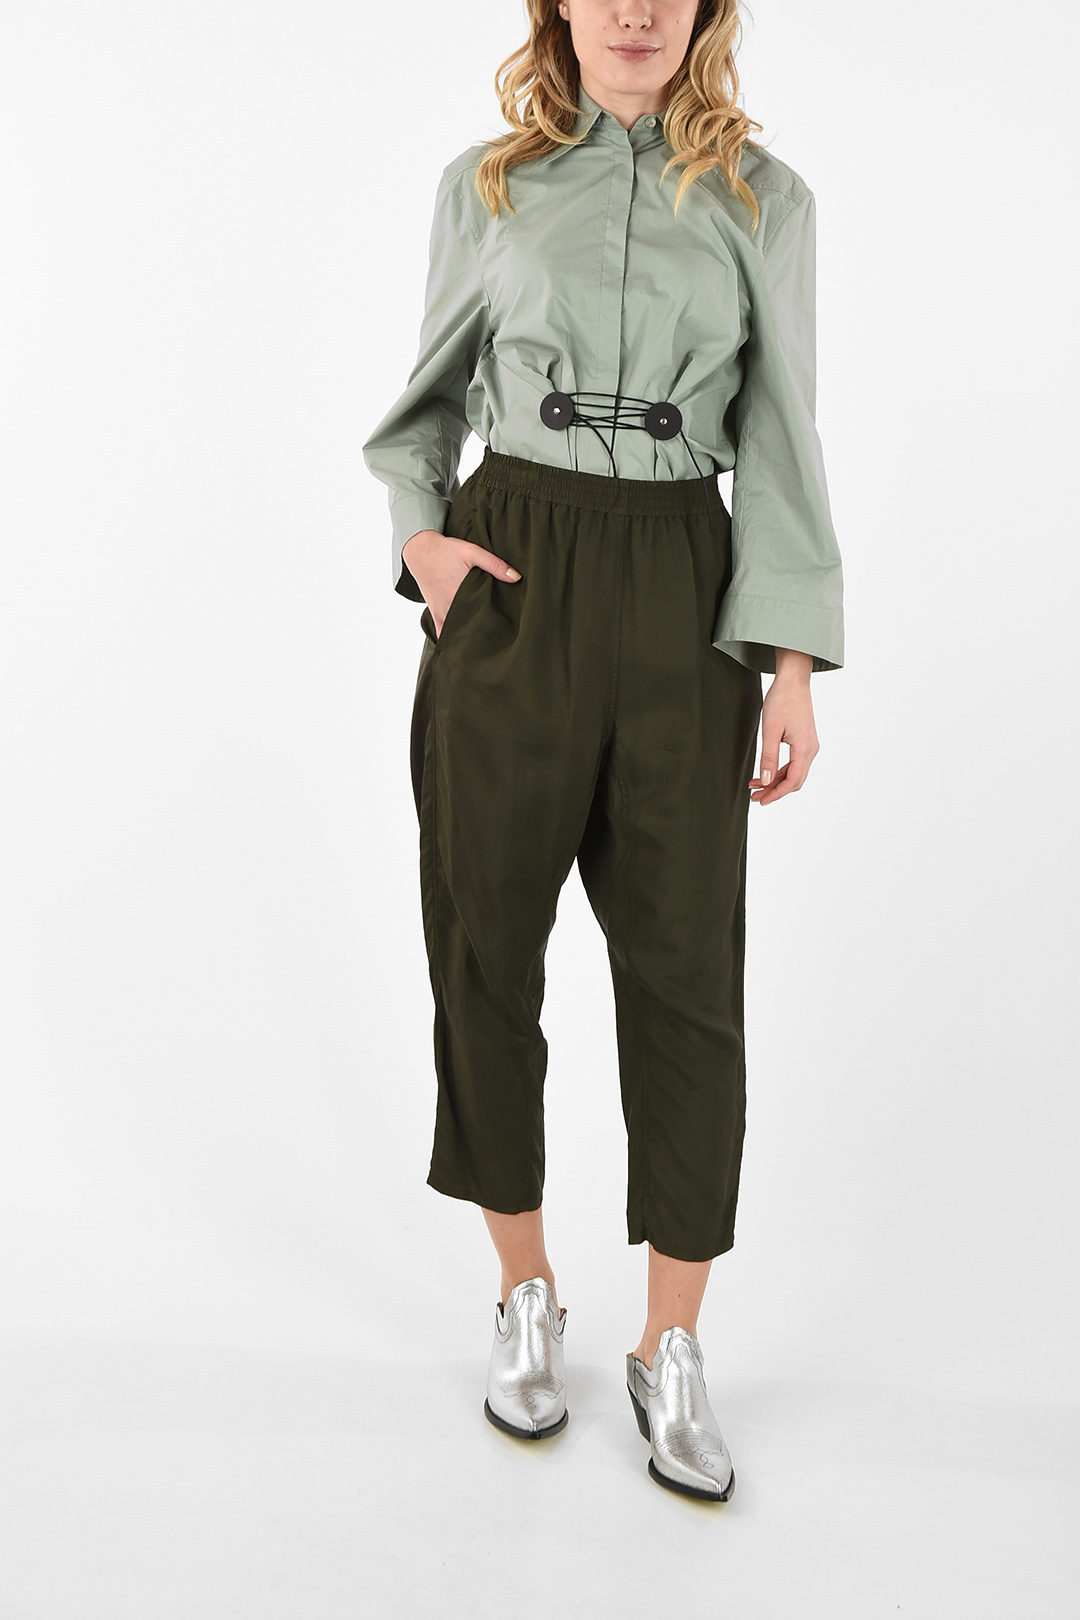 Peg top fit flannel trousers Luloretta | 38 | K41830-1900_38